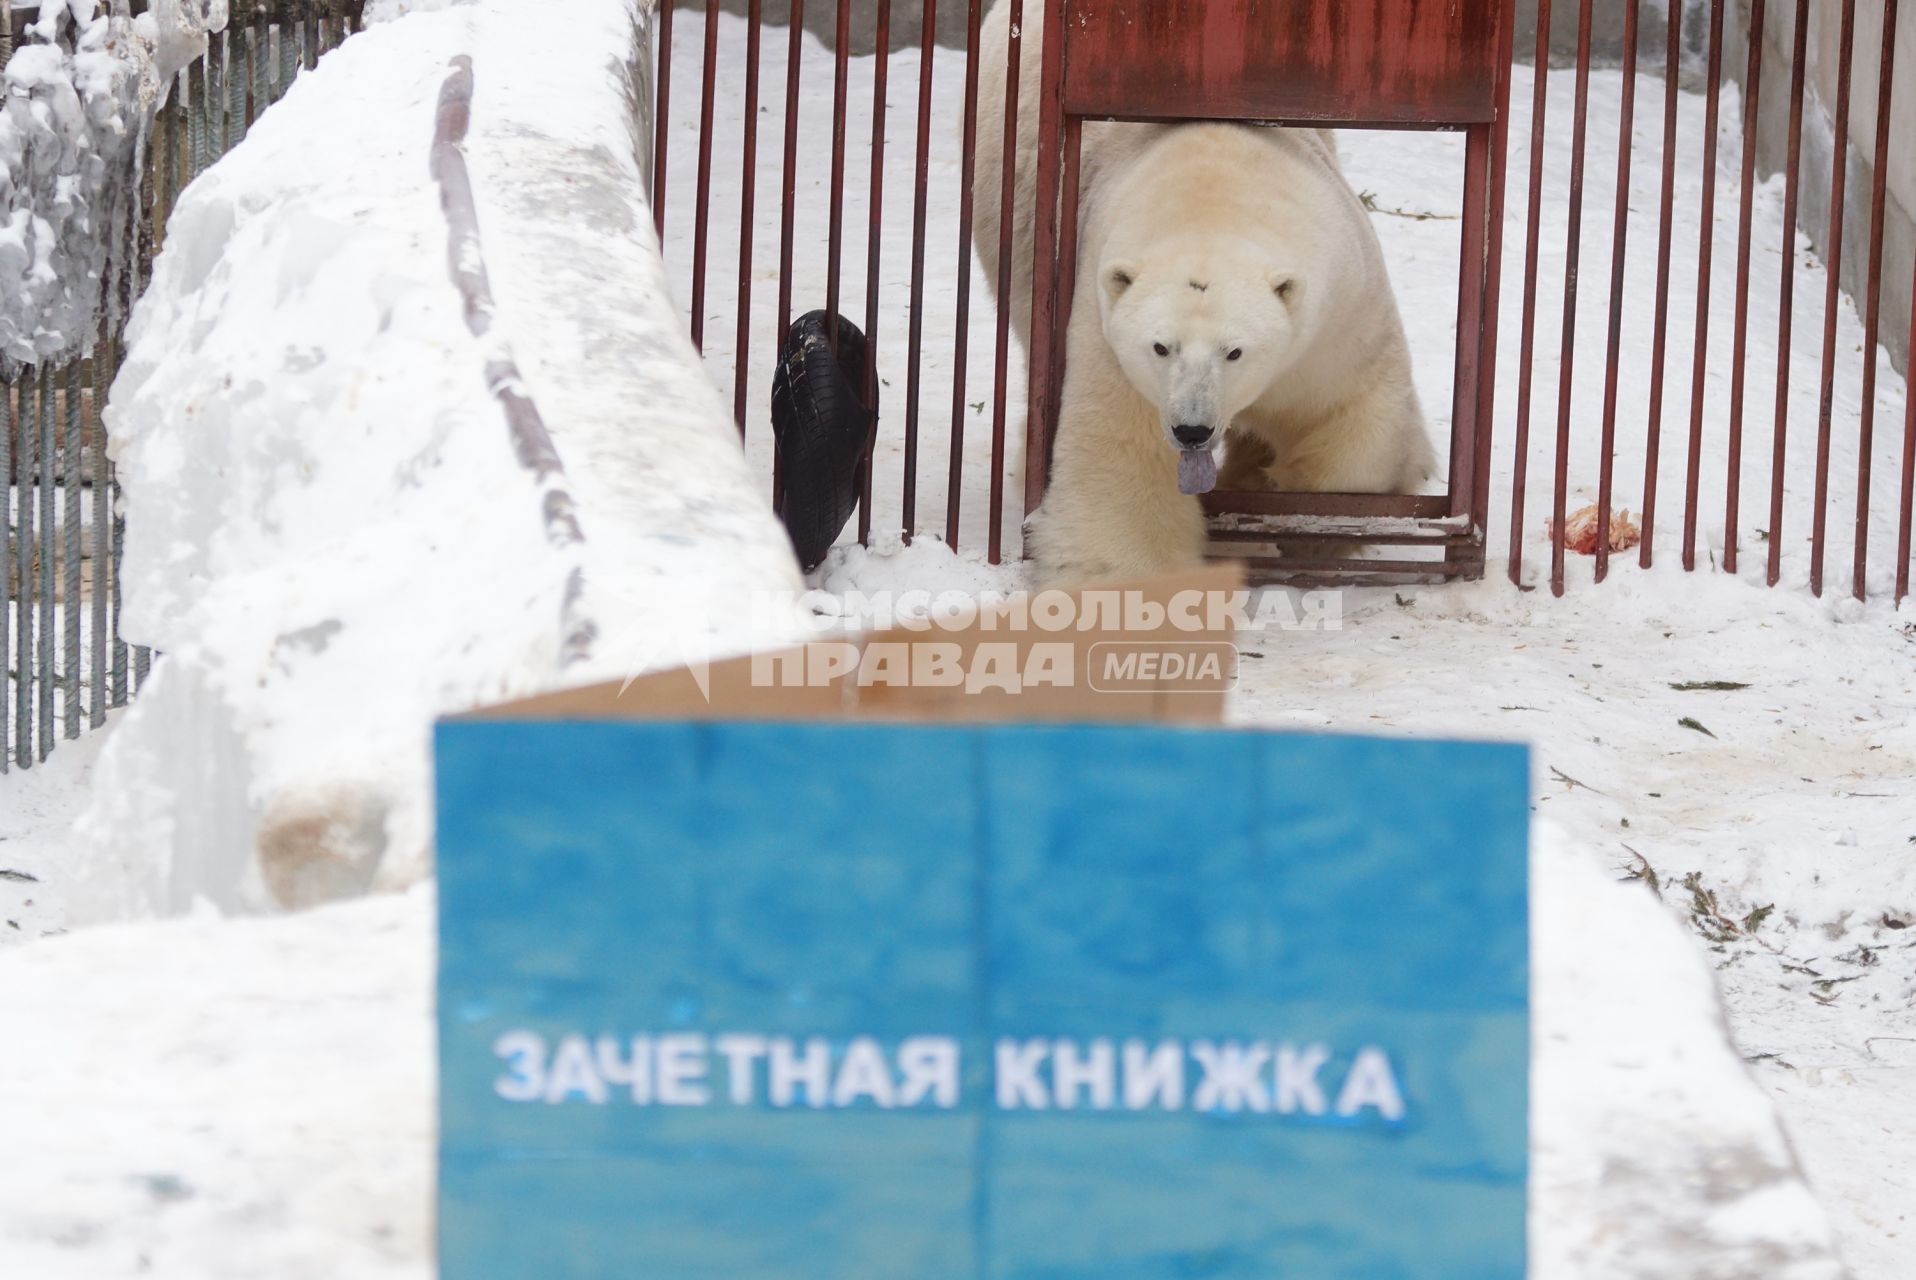 Белый медведь Умка из Екатеринбургского зоопарка заходит в свой вольер, где его ждет зачетная книжка, в день его рождения совпавшим с днем студента